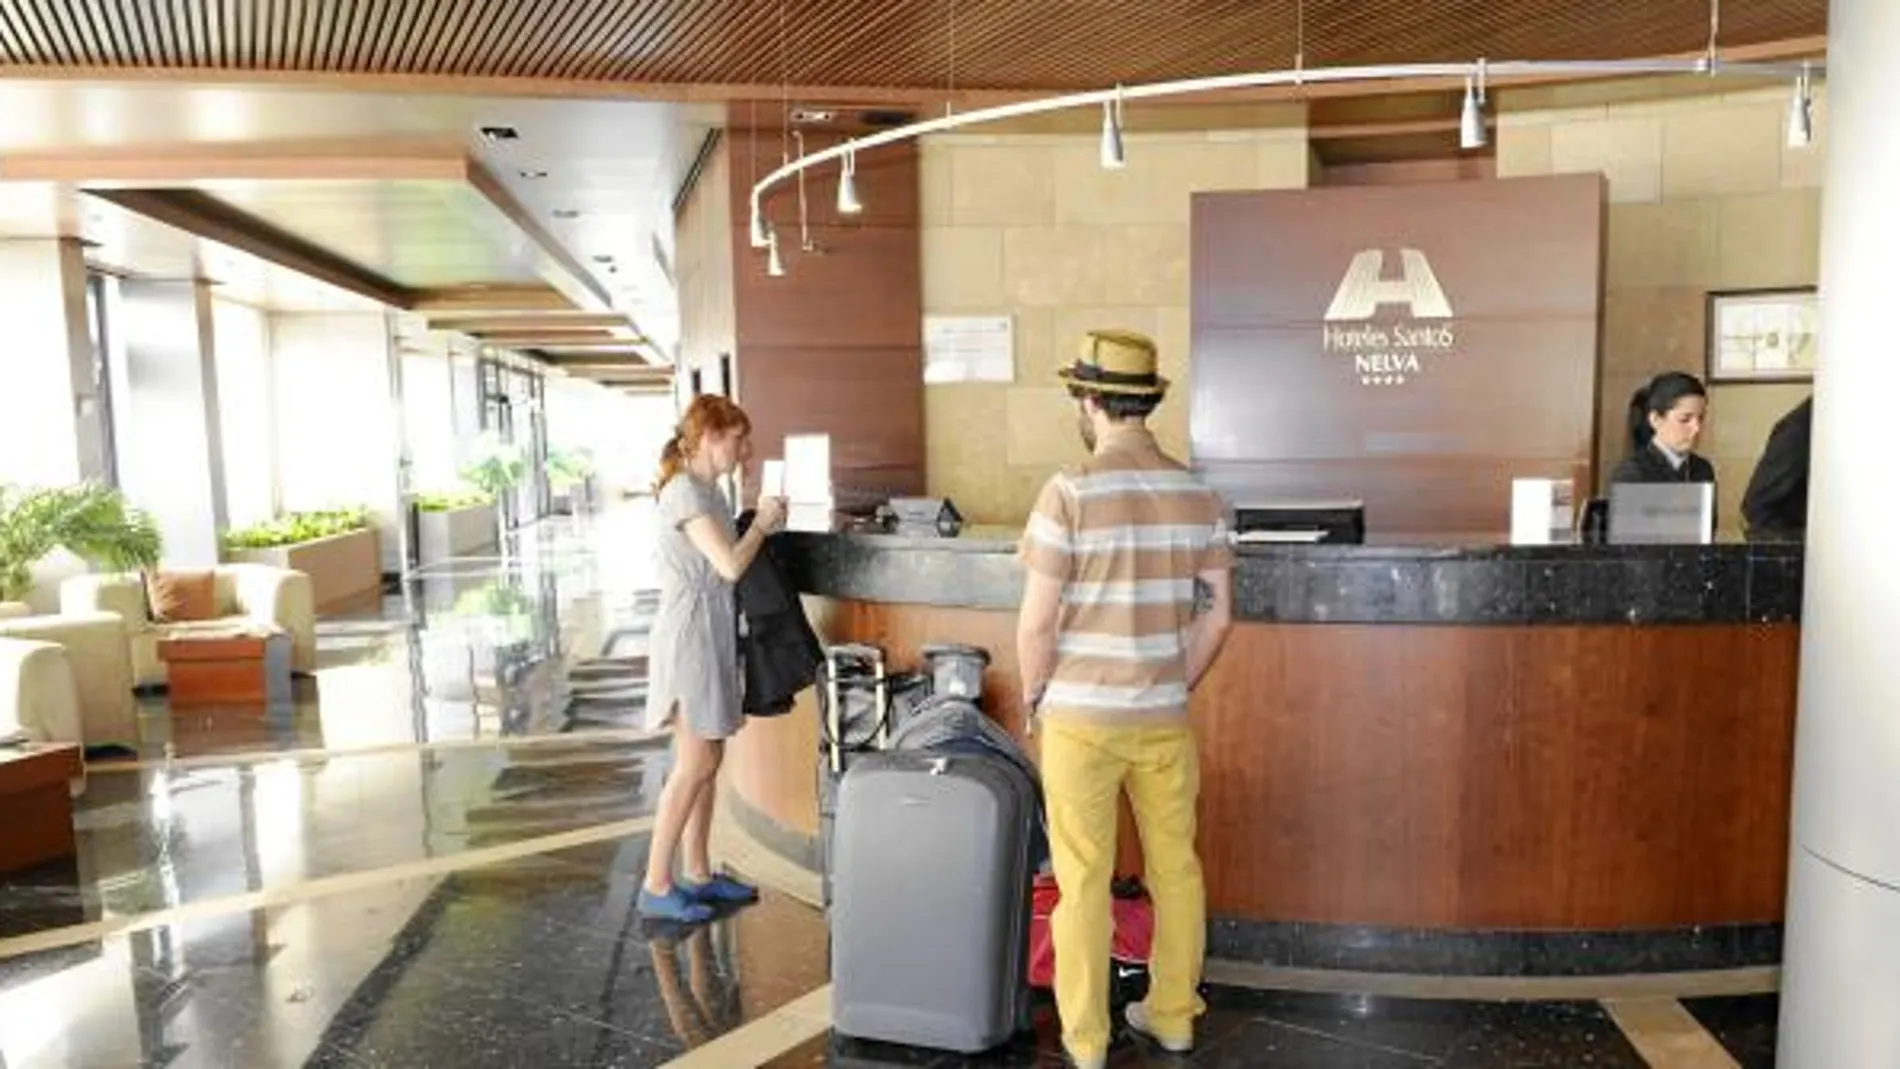 Dos turistas se registran en un hotel de Murcia